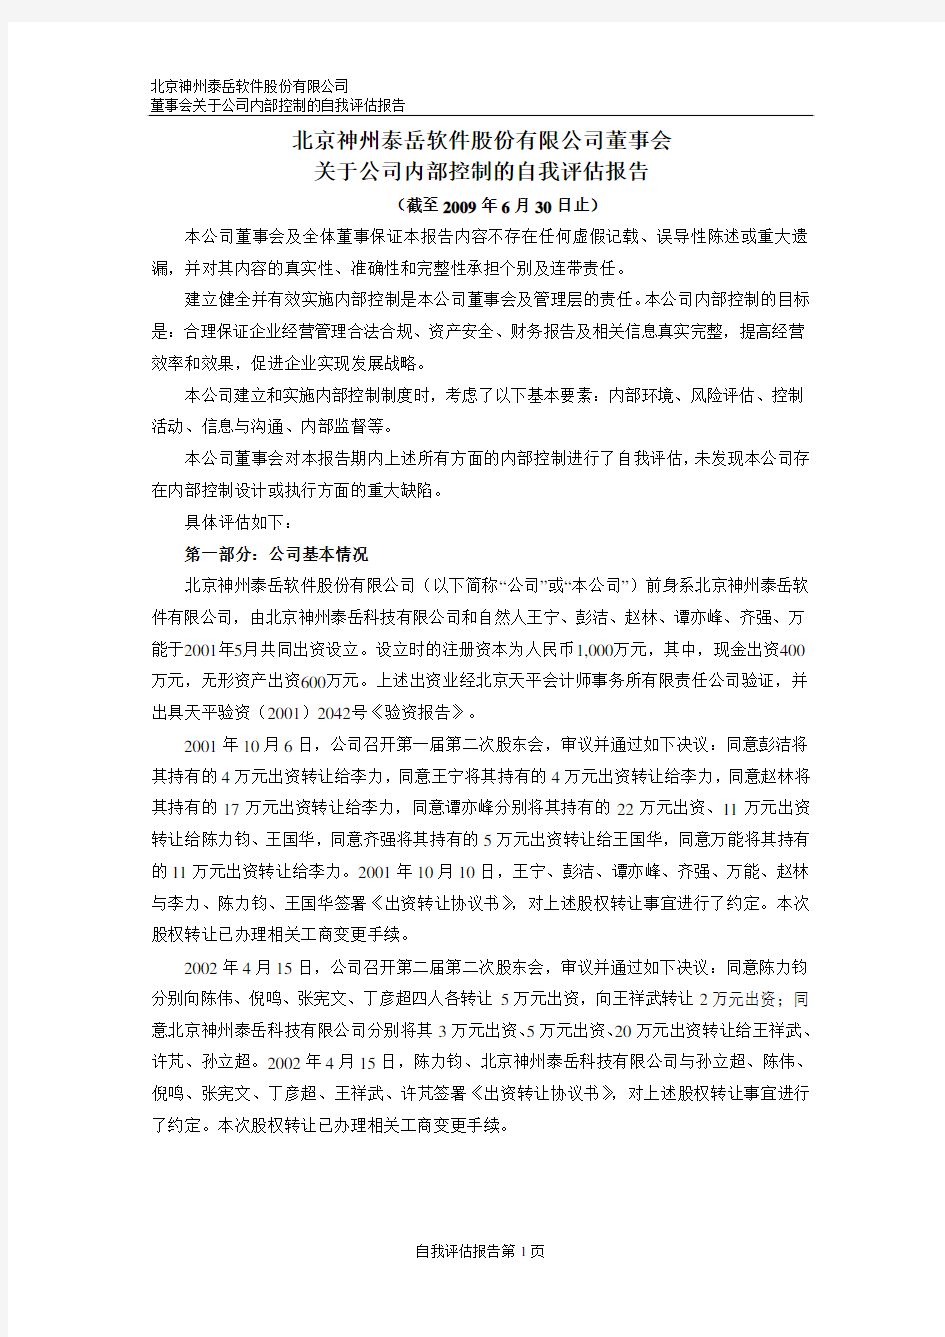 北京神州泰岳软件股份有限公司 内部控制审核报告 200906